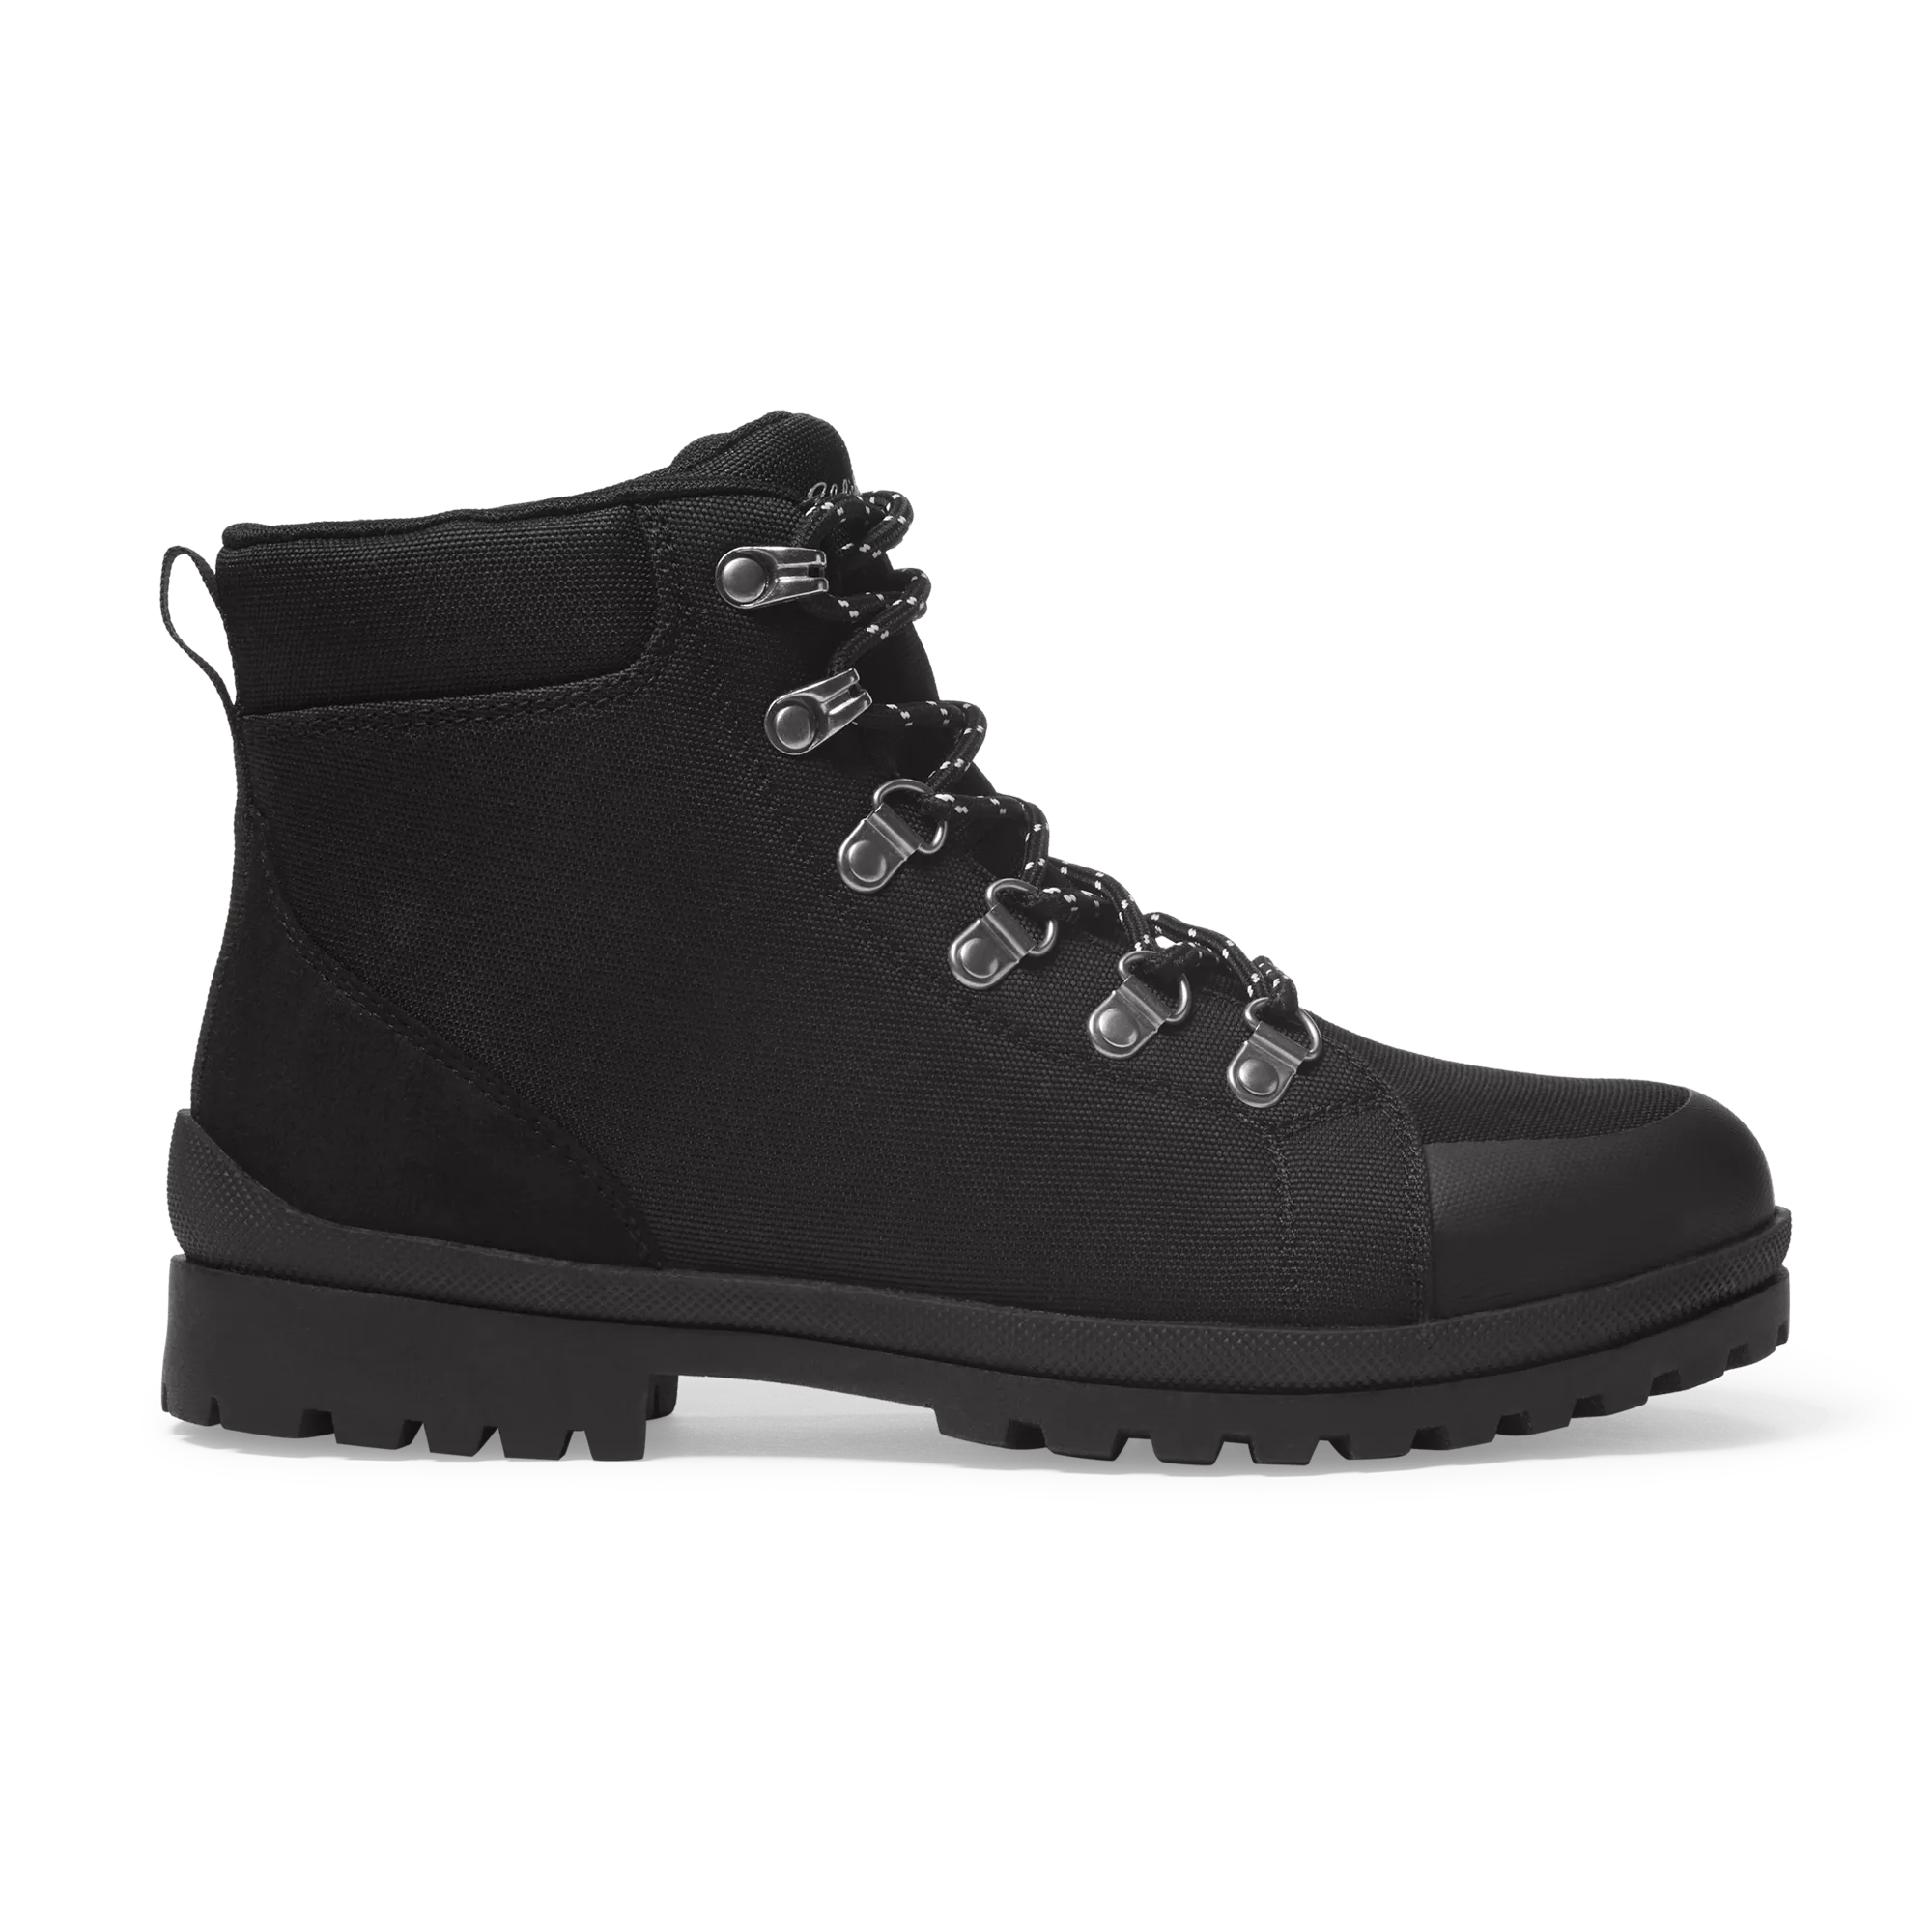 Storm Ridgeline® Boots